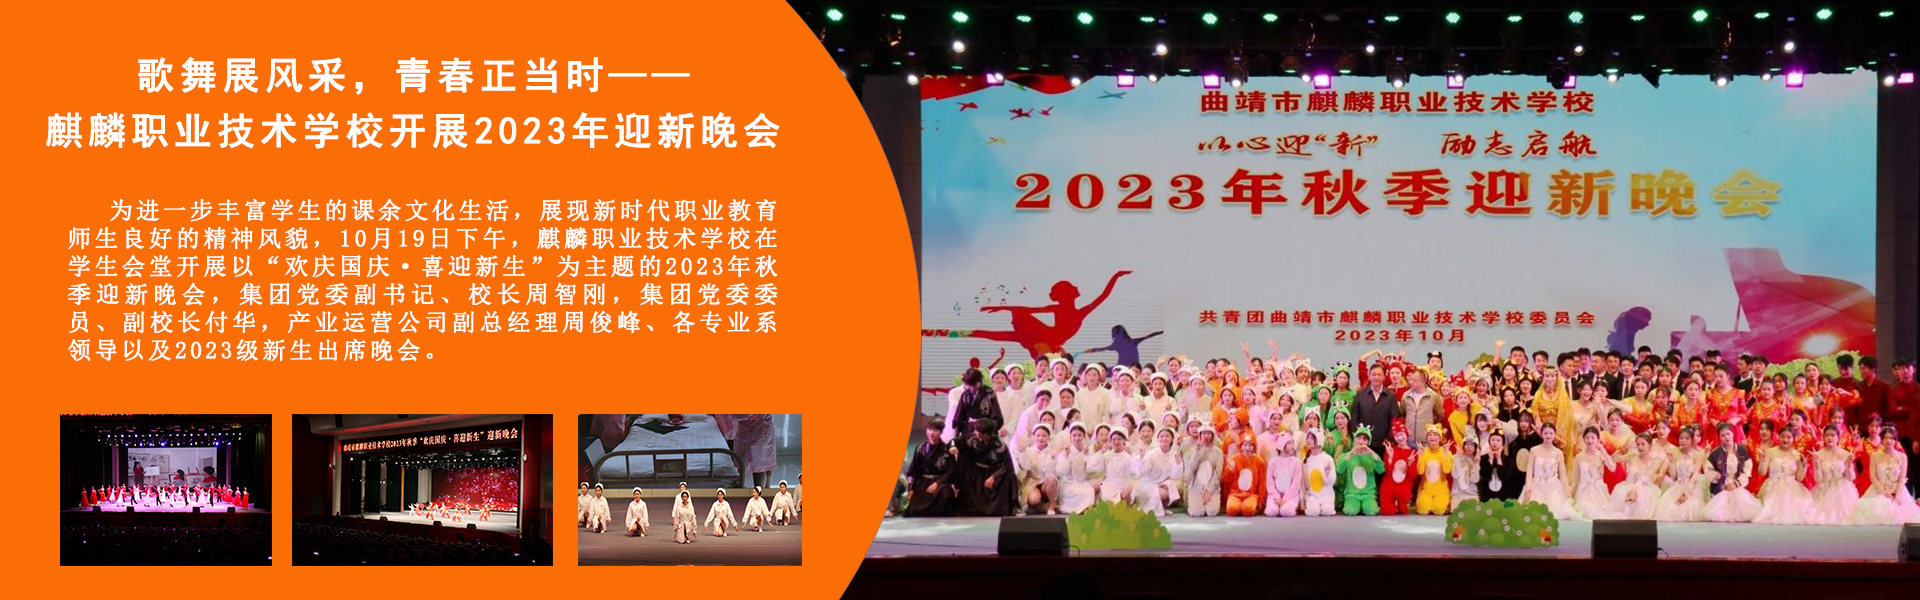 歌舞展風采，青春正當時——麒麟職業技術學校開展2023年迎新晚會